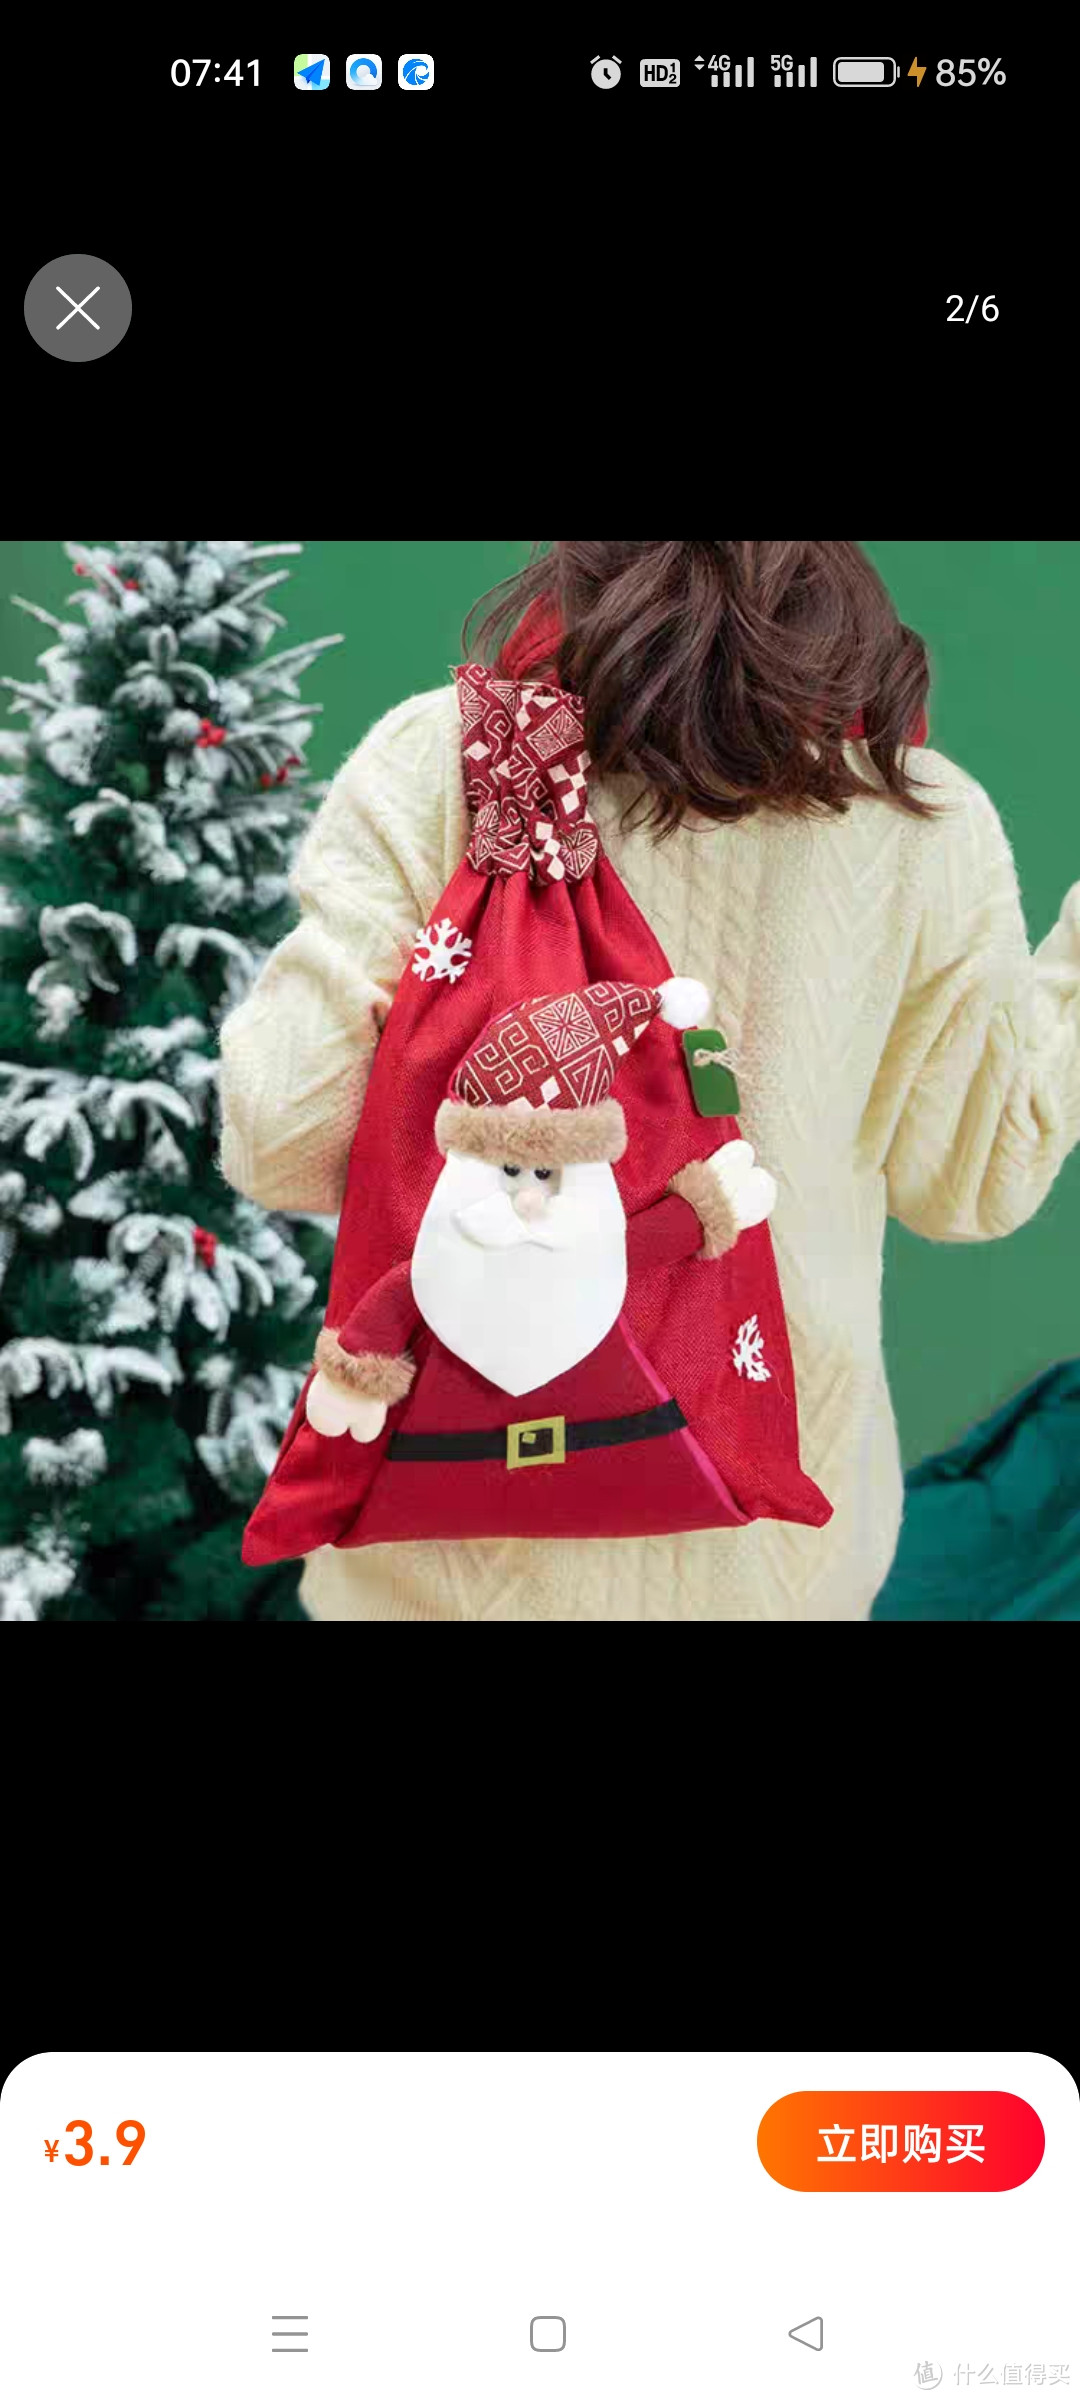 圣诞节礼物袋儿童礼品包装袋圣诞老人大背包手提袋平安夜苹果袋子